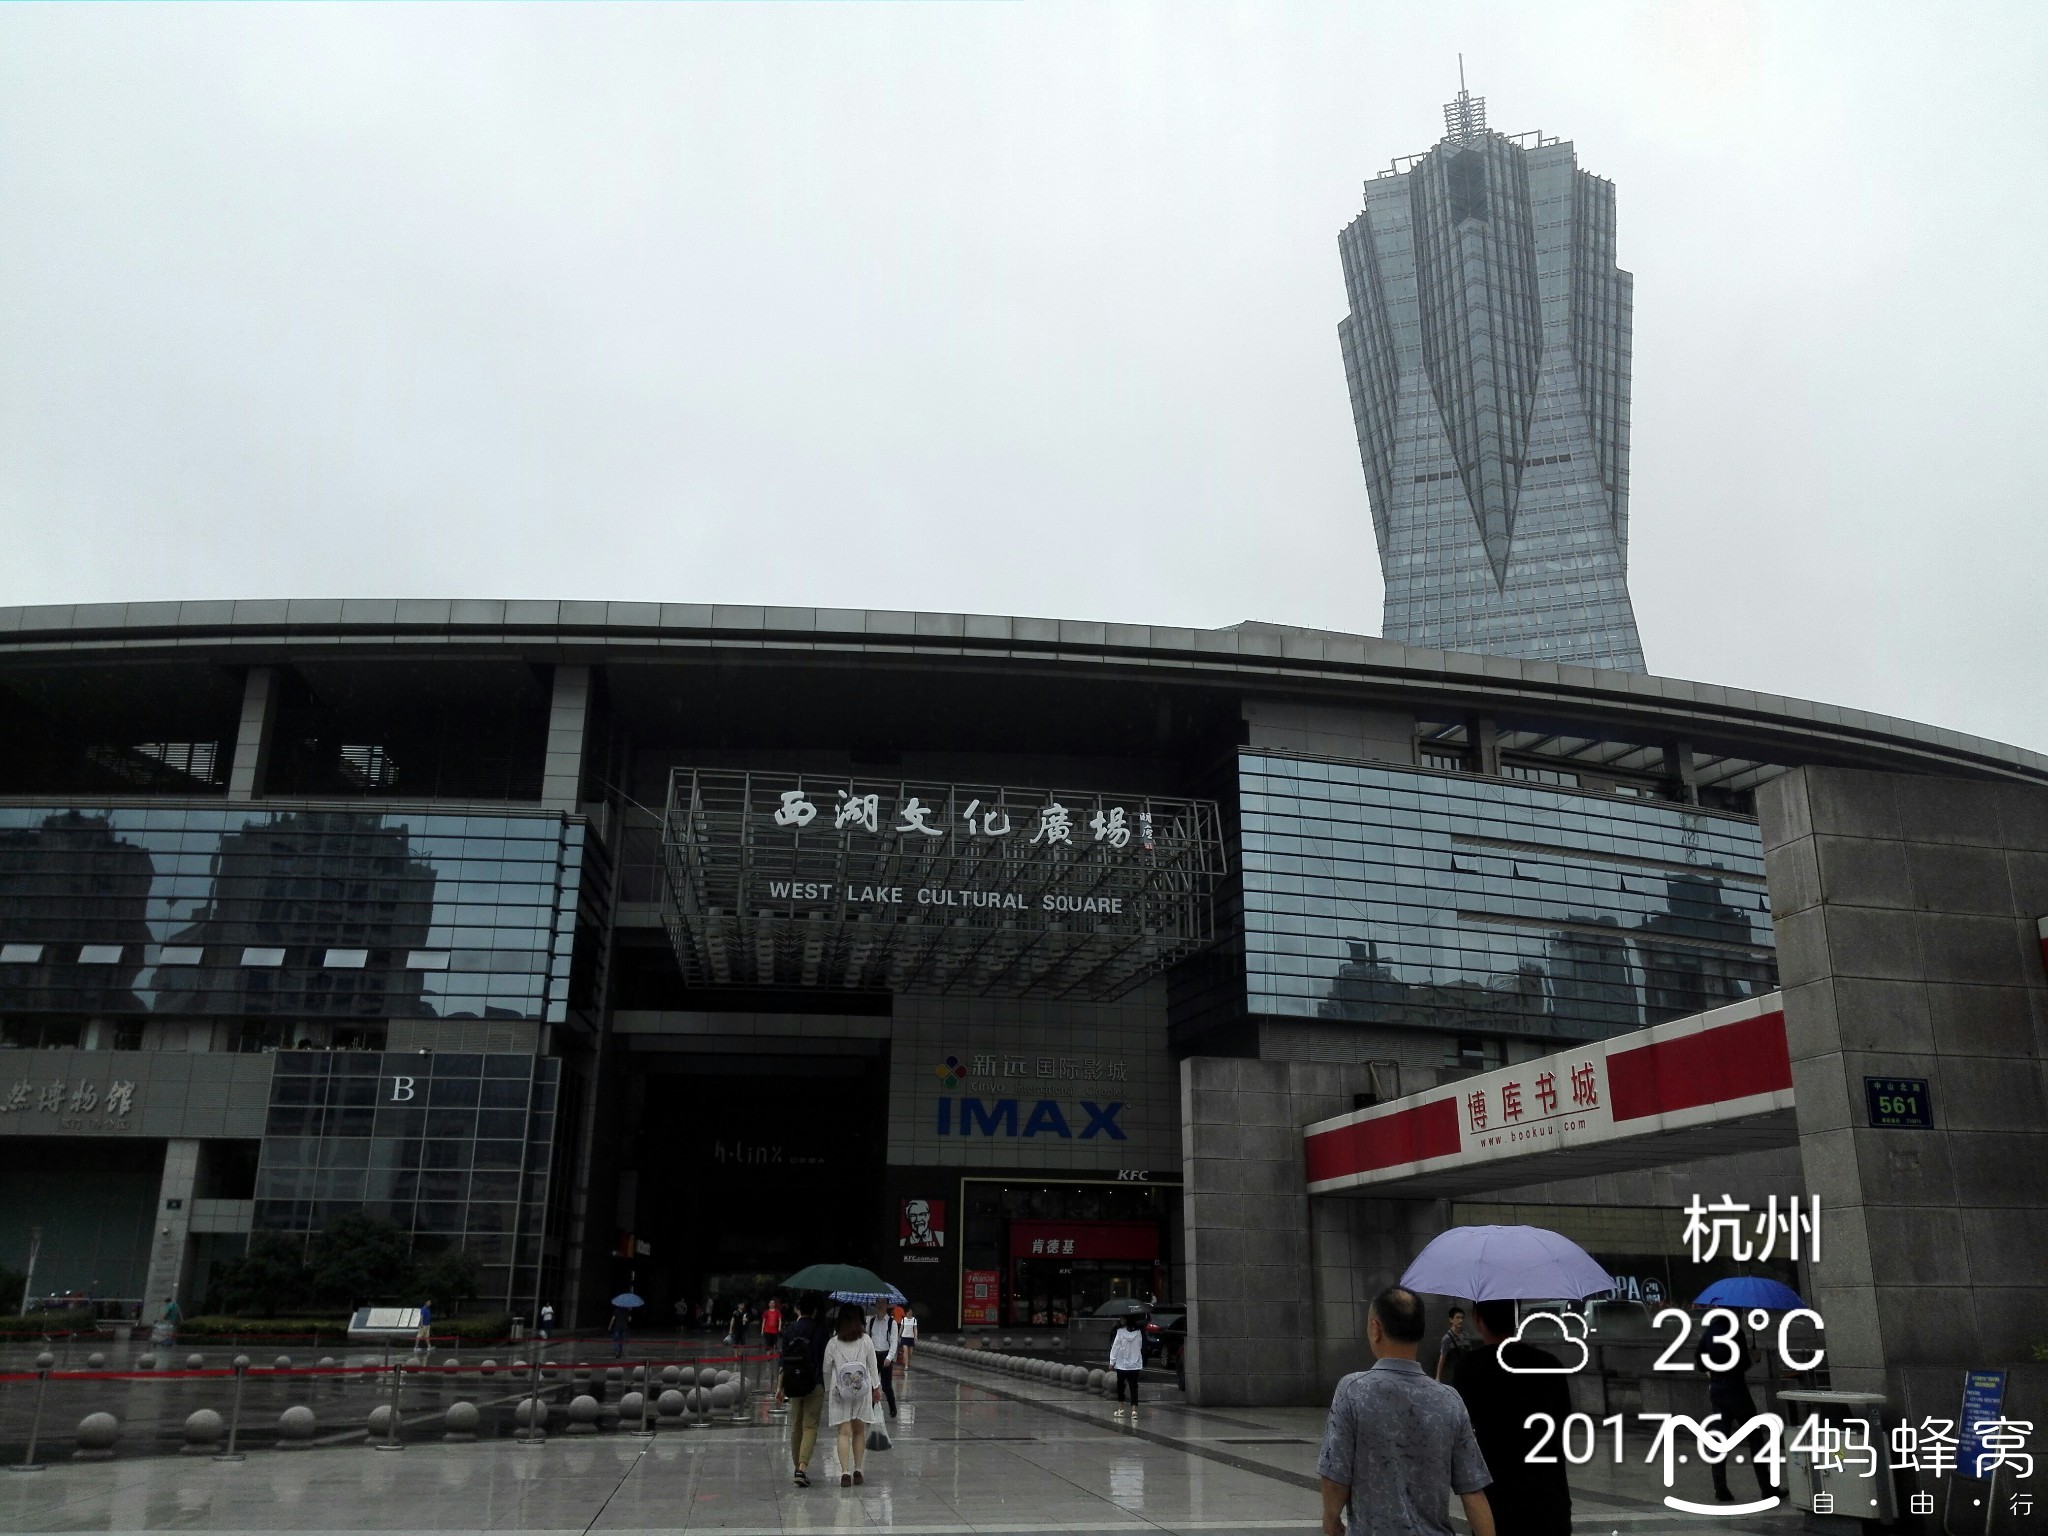 浙江省科技馆-----杭州西湖文化广场参观之一